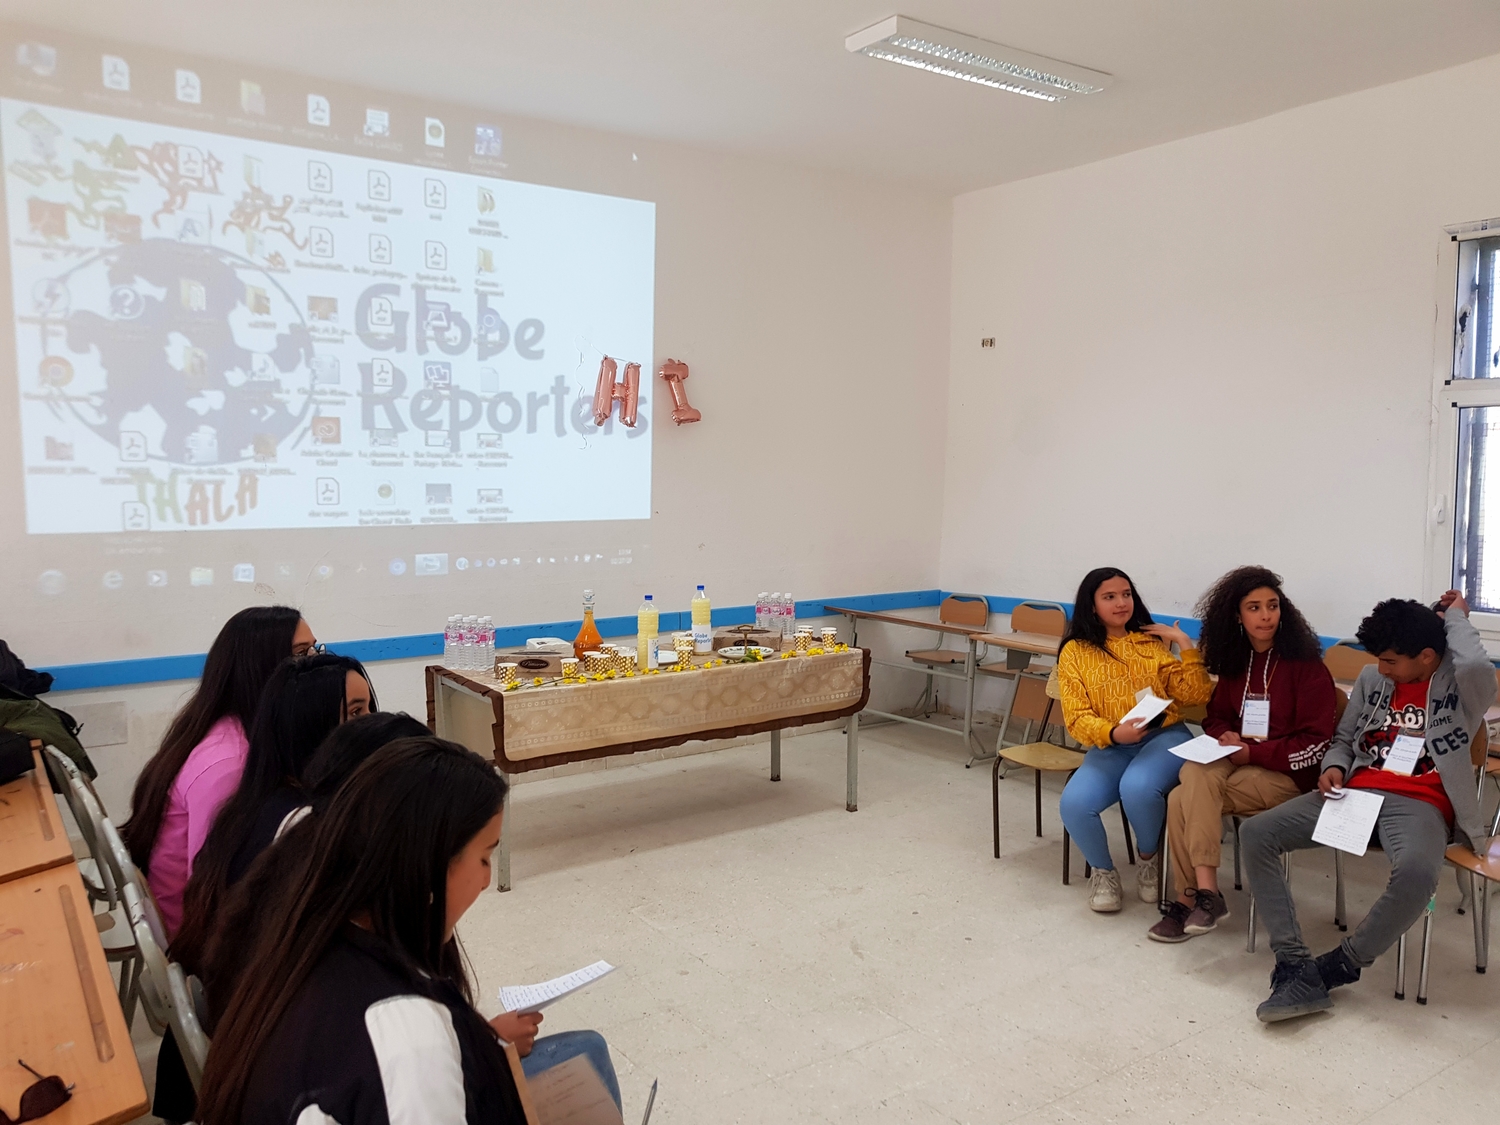 L’atelier de travail entrepris avec les élèves du lycée Ibn Charaf, Thala, Tunisie.